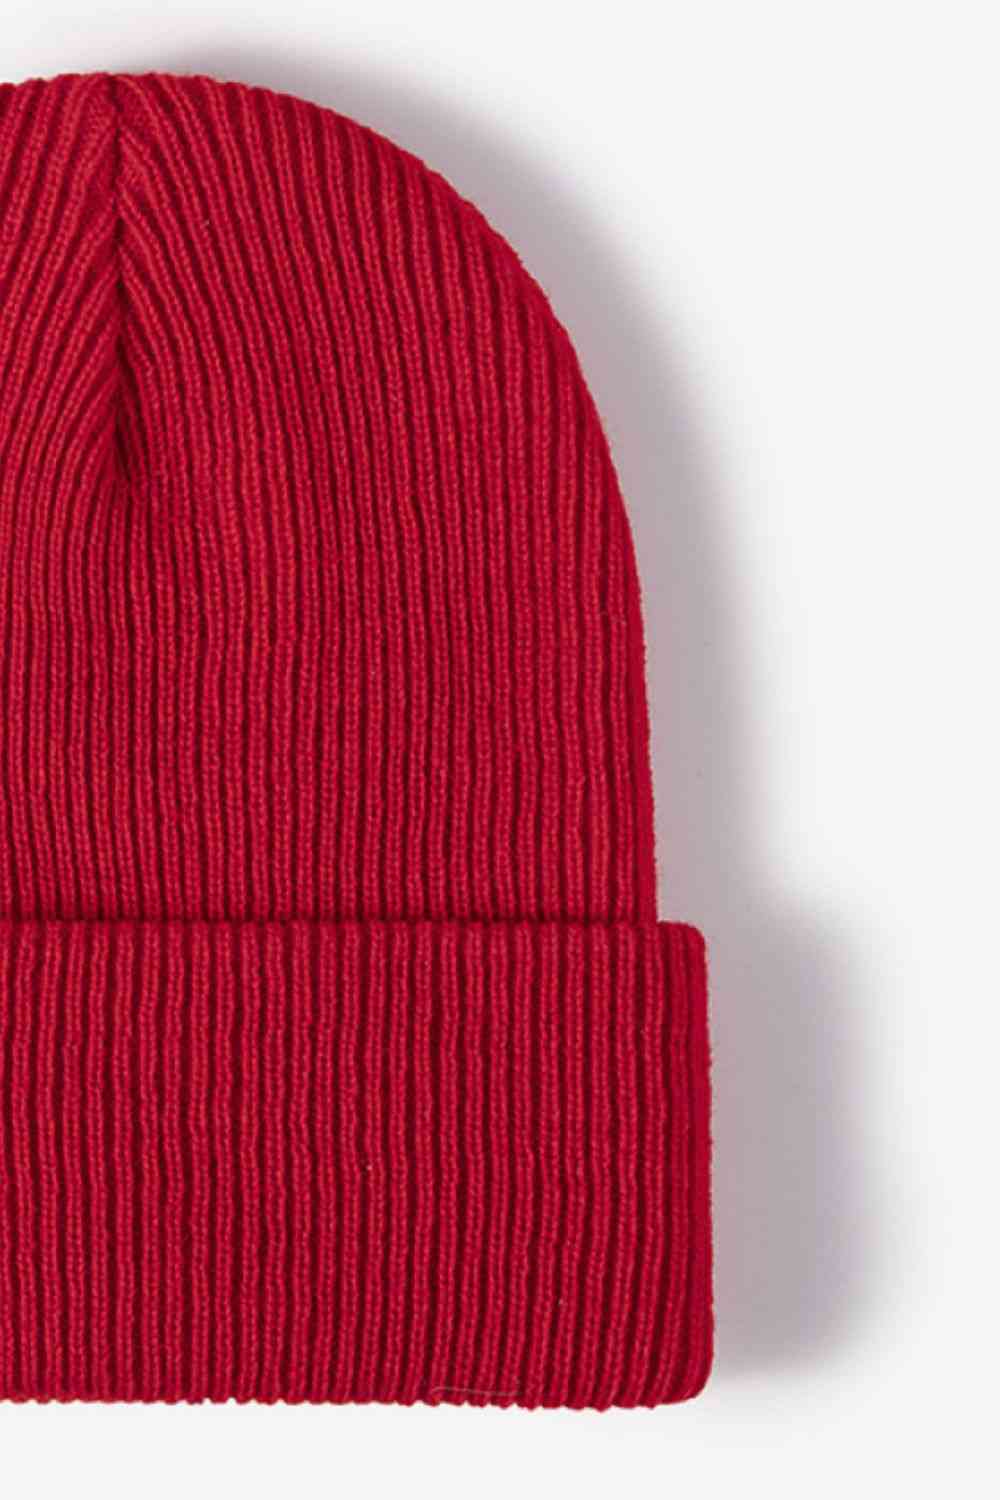 Brown Warm Winter Knit Beanie Winter Accessories